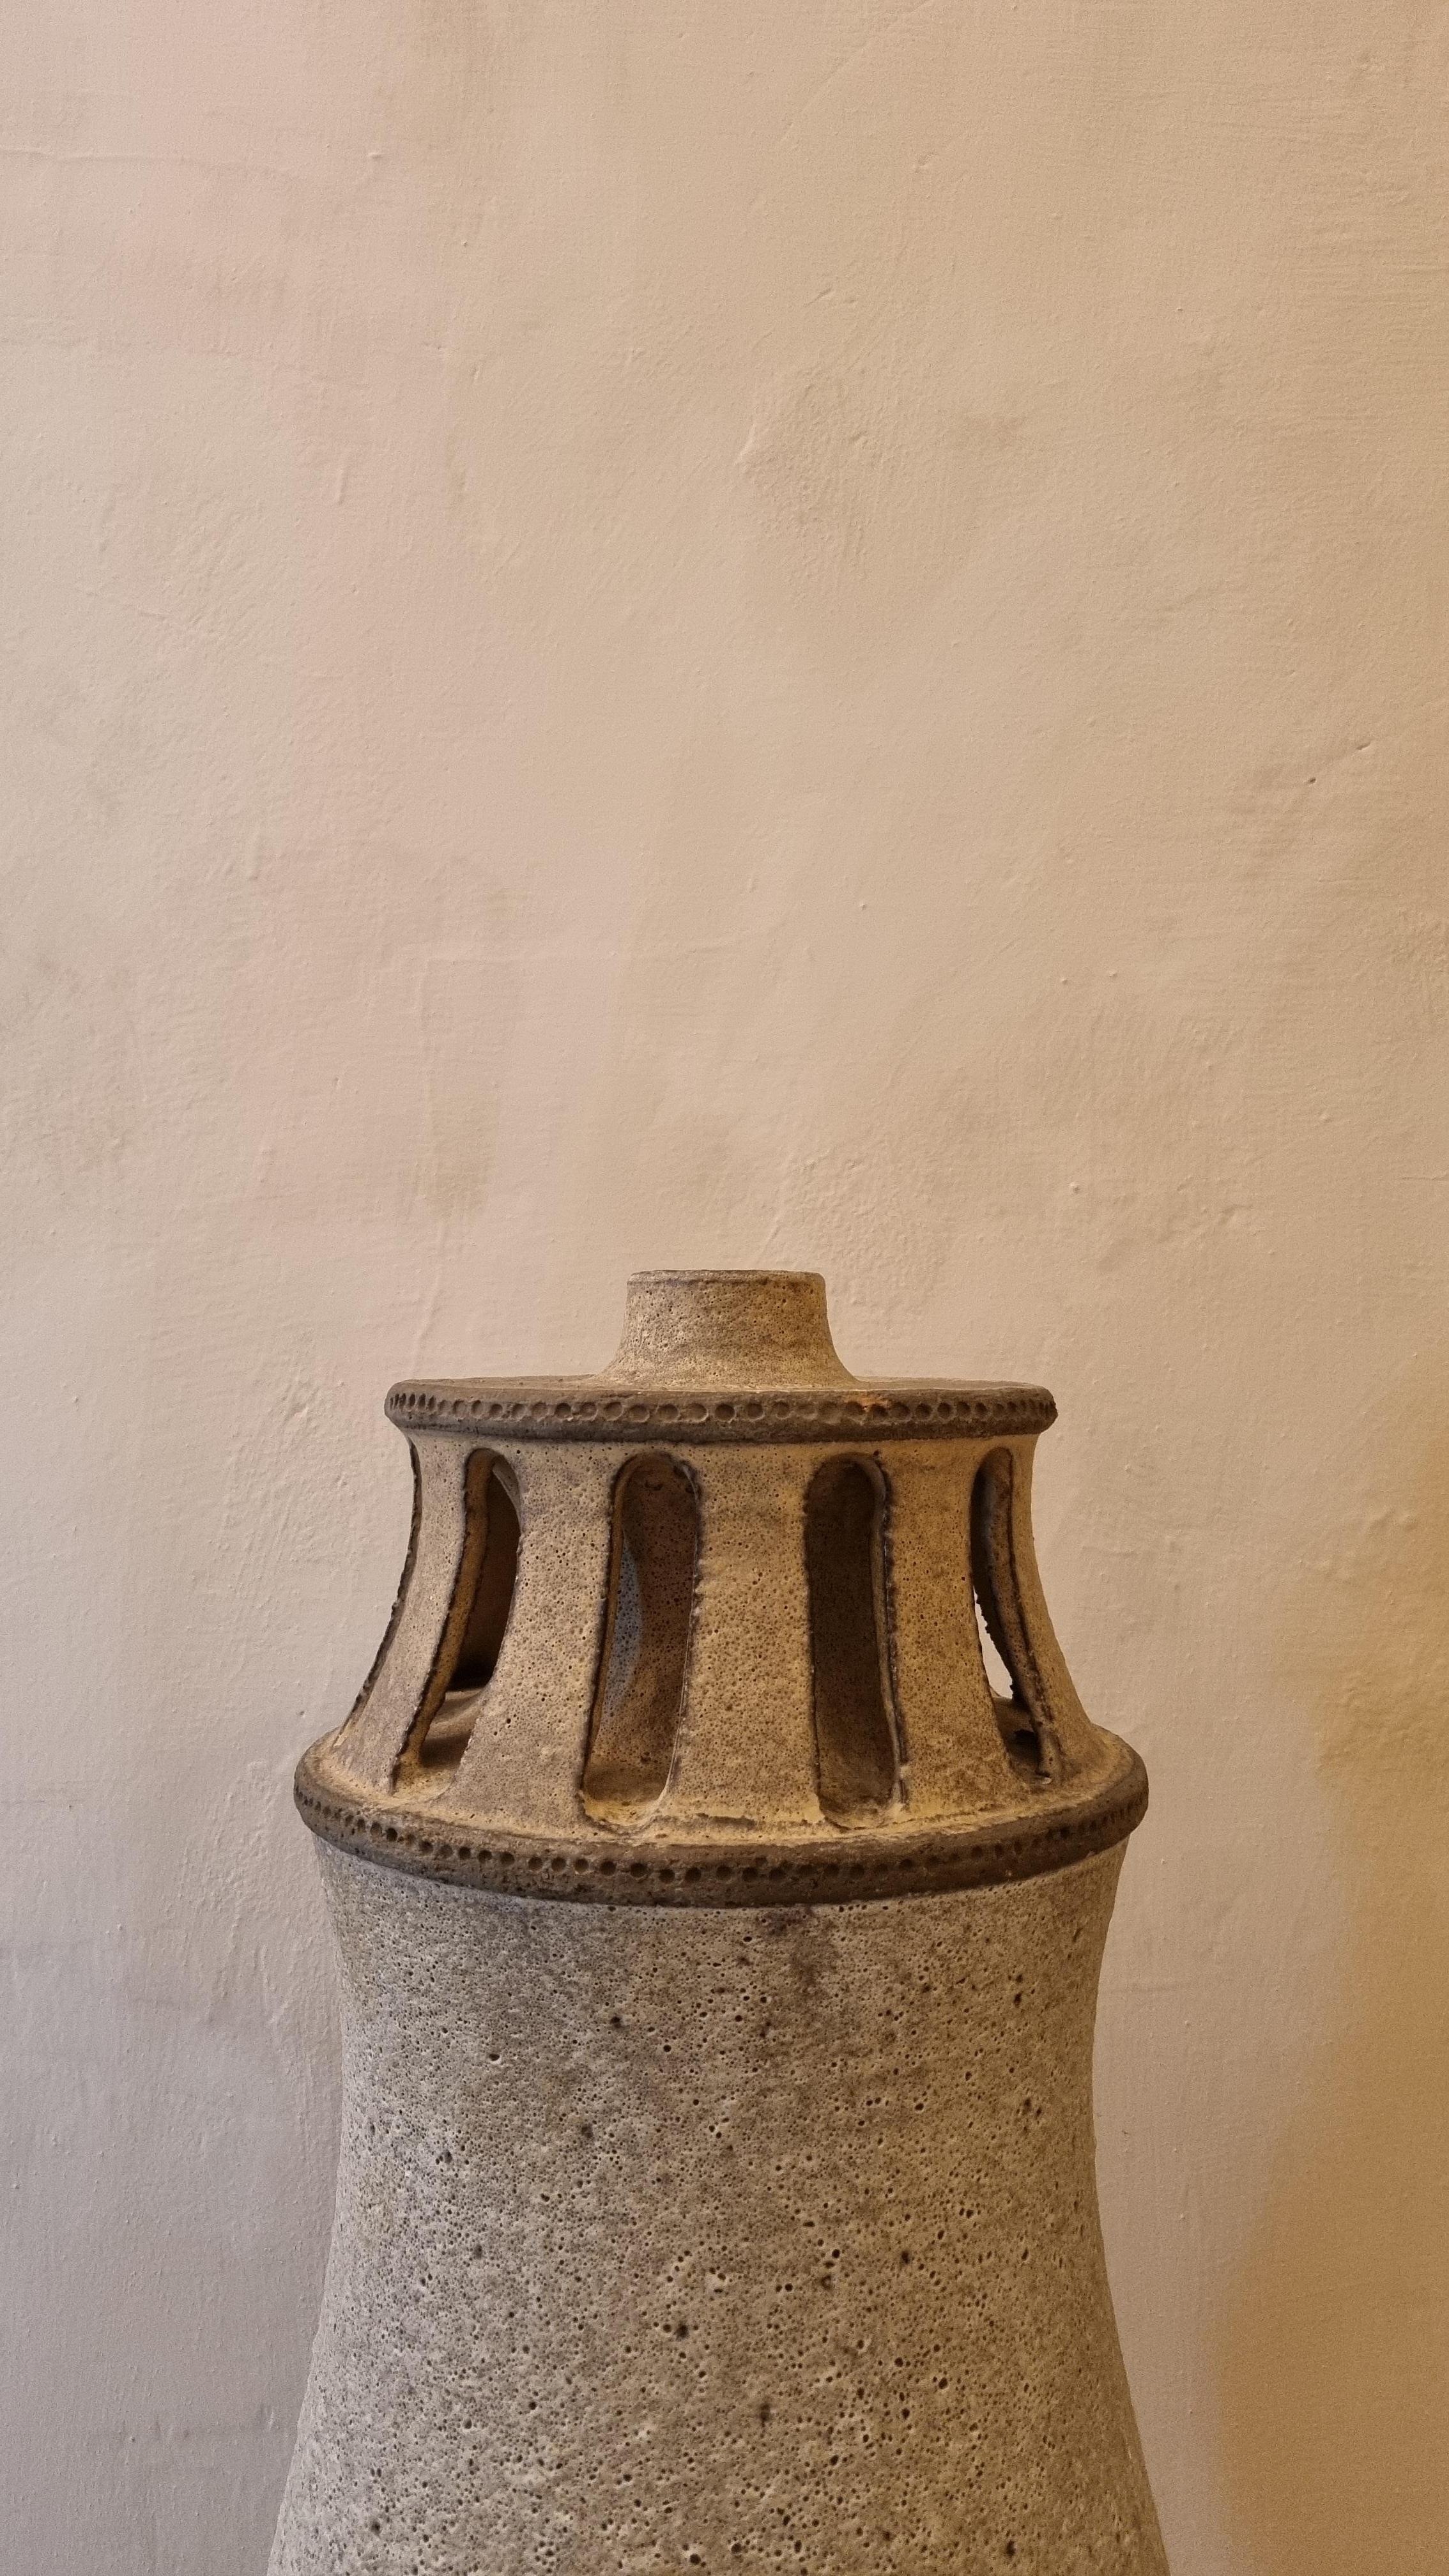 Lampenhalter aus Keramik von Aldo Londi für Ceramiche Bitossi Montelupo, 1970. Glasierte Keramik,  , mattgrauer Ton, signiert.
Dieses seltene Modell  wurde in einer limitierten Serie von  stücke,
Jedes von Bitossi geschaffene Werk folgt einem sehr